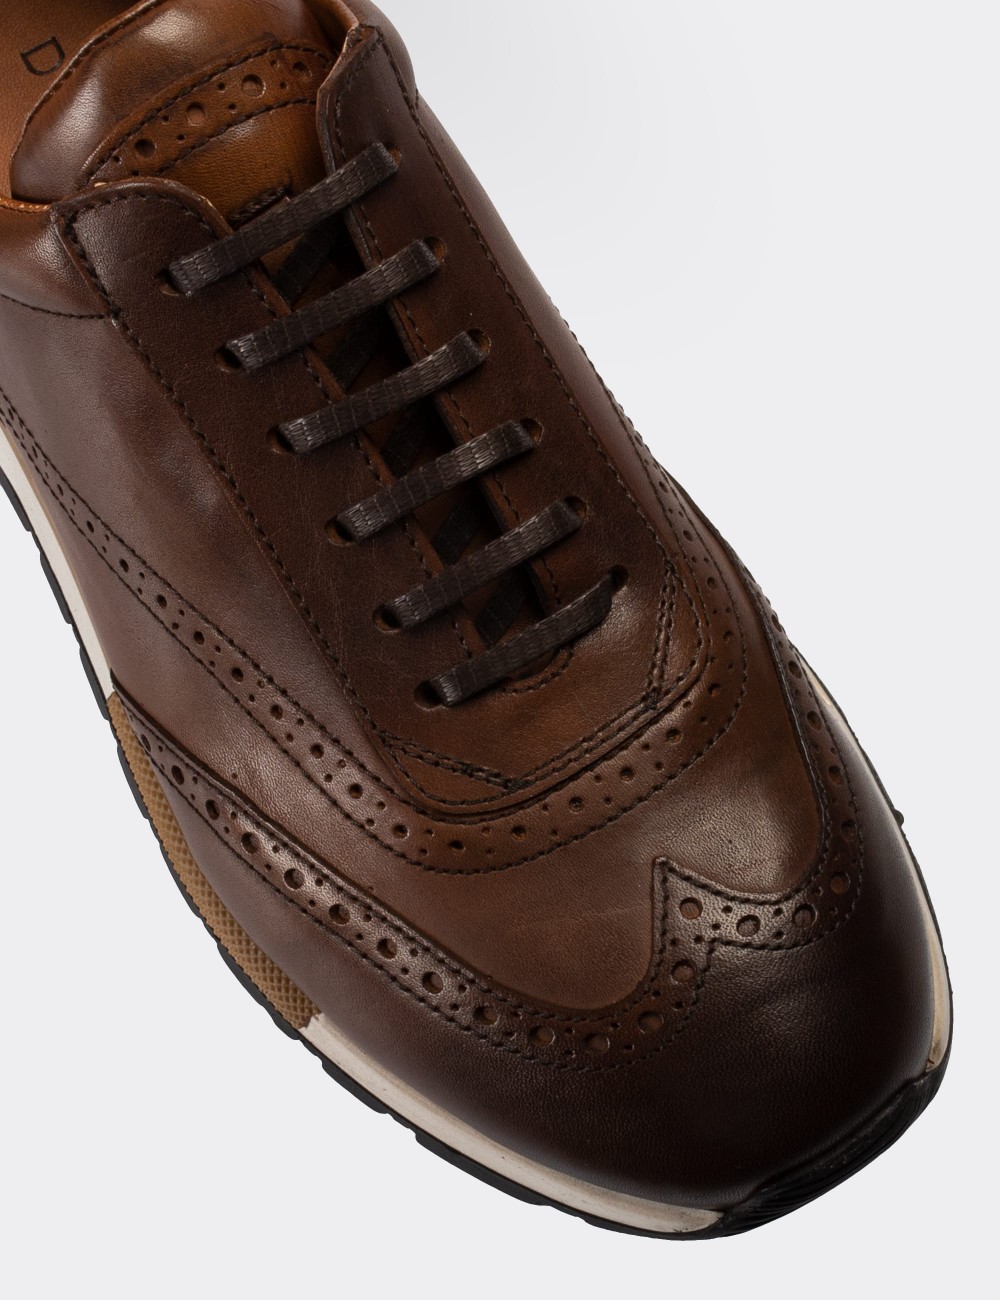 Tan  Leather Sneakers - 00750MTBAT02